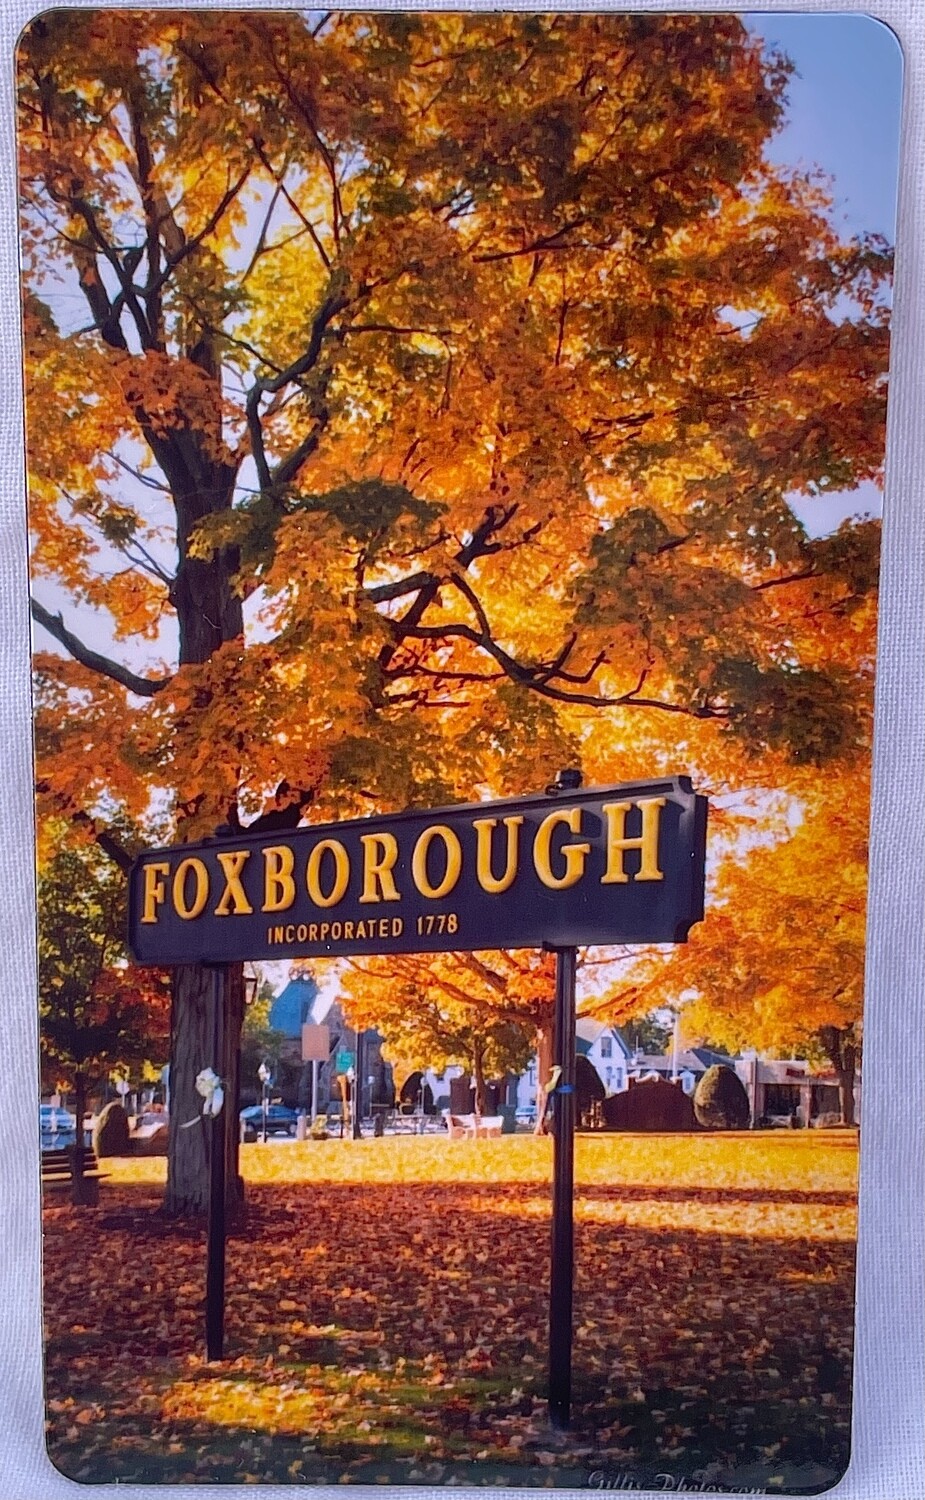 Foxboro Gallery-3"x 2" Photo Magnet-Iconic Foxboro Sign in Autumn